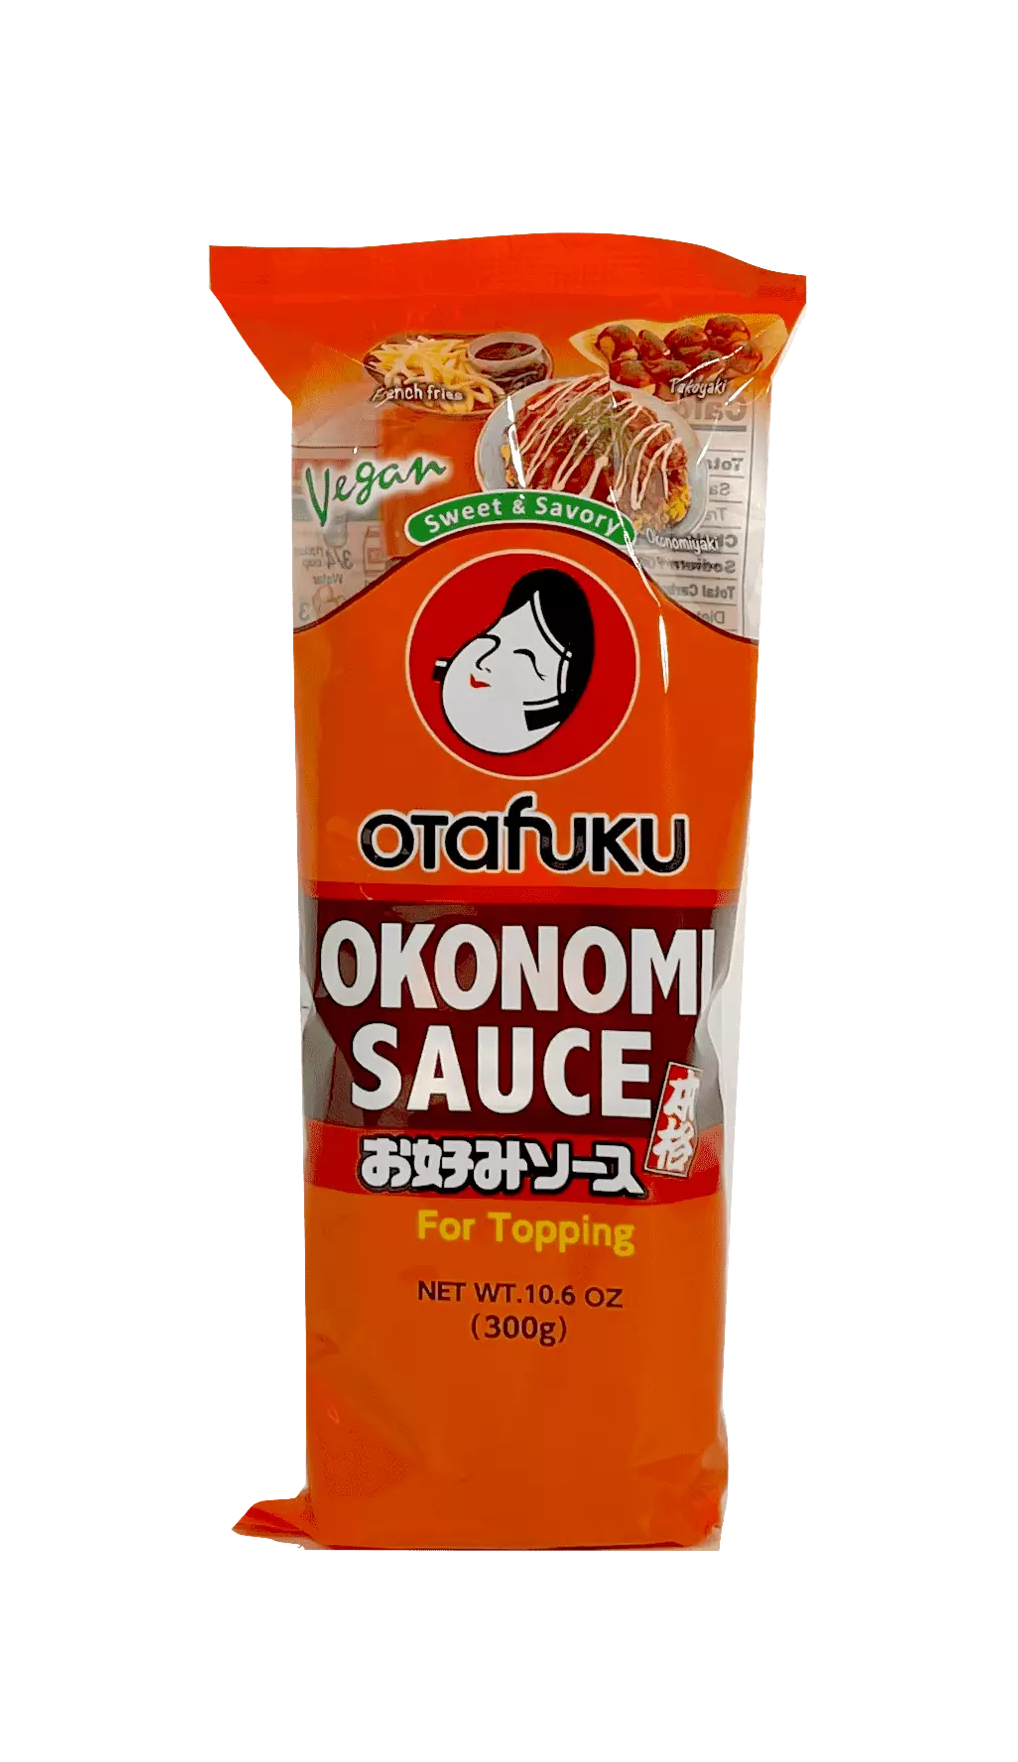 Okonomi 调味酱 甜/盐味 300g Otafuku 日本